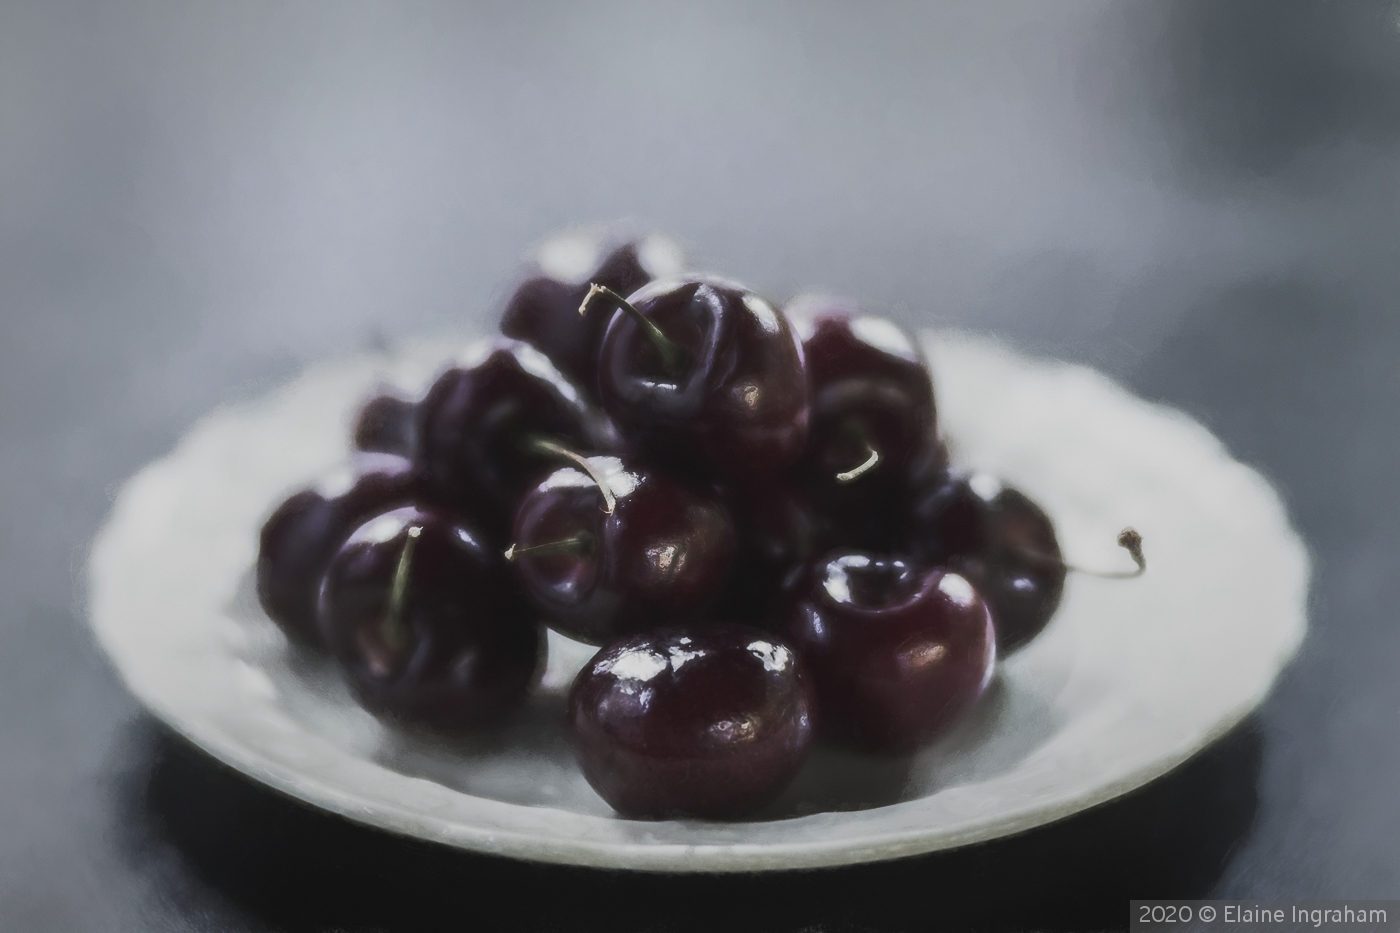 Cherry Cherries by Elaine Ingraham